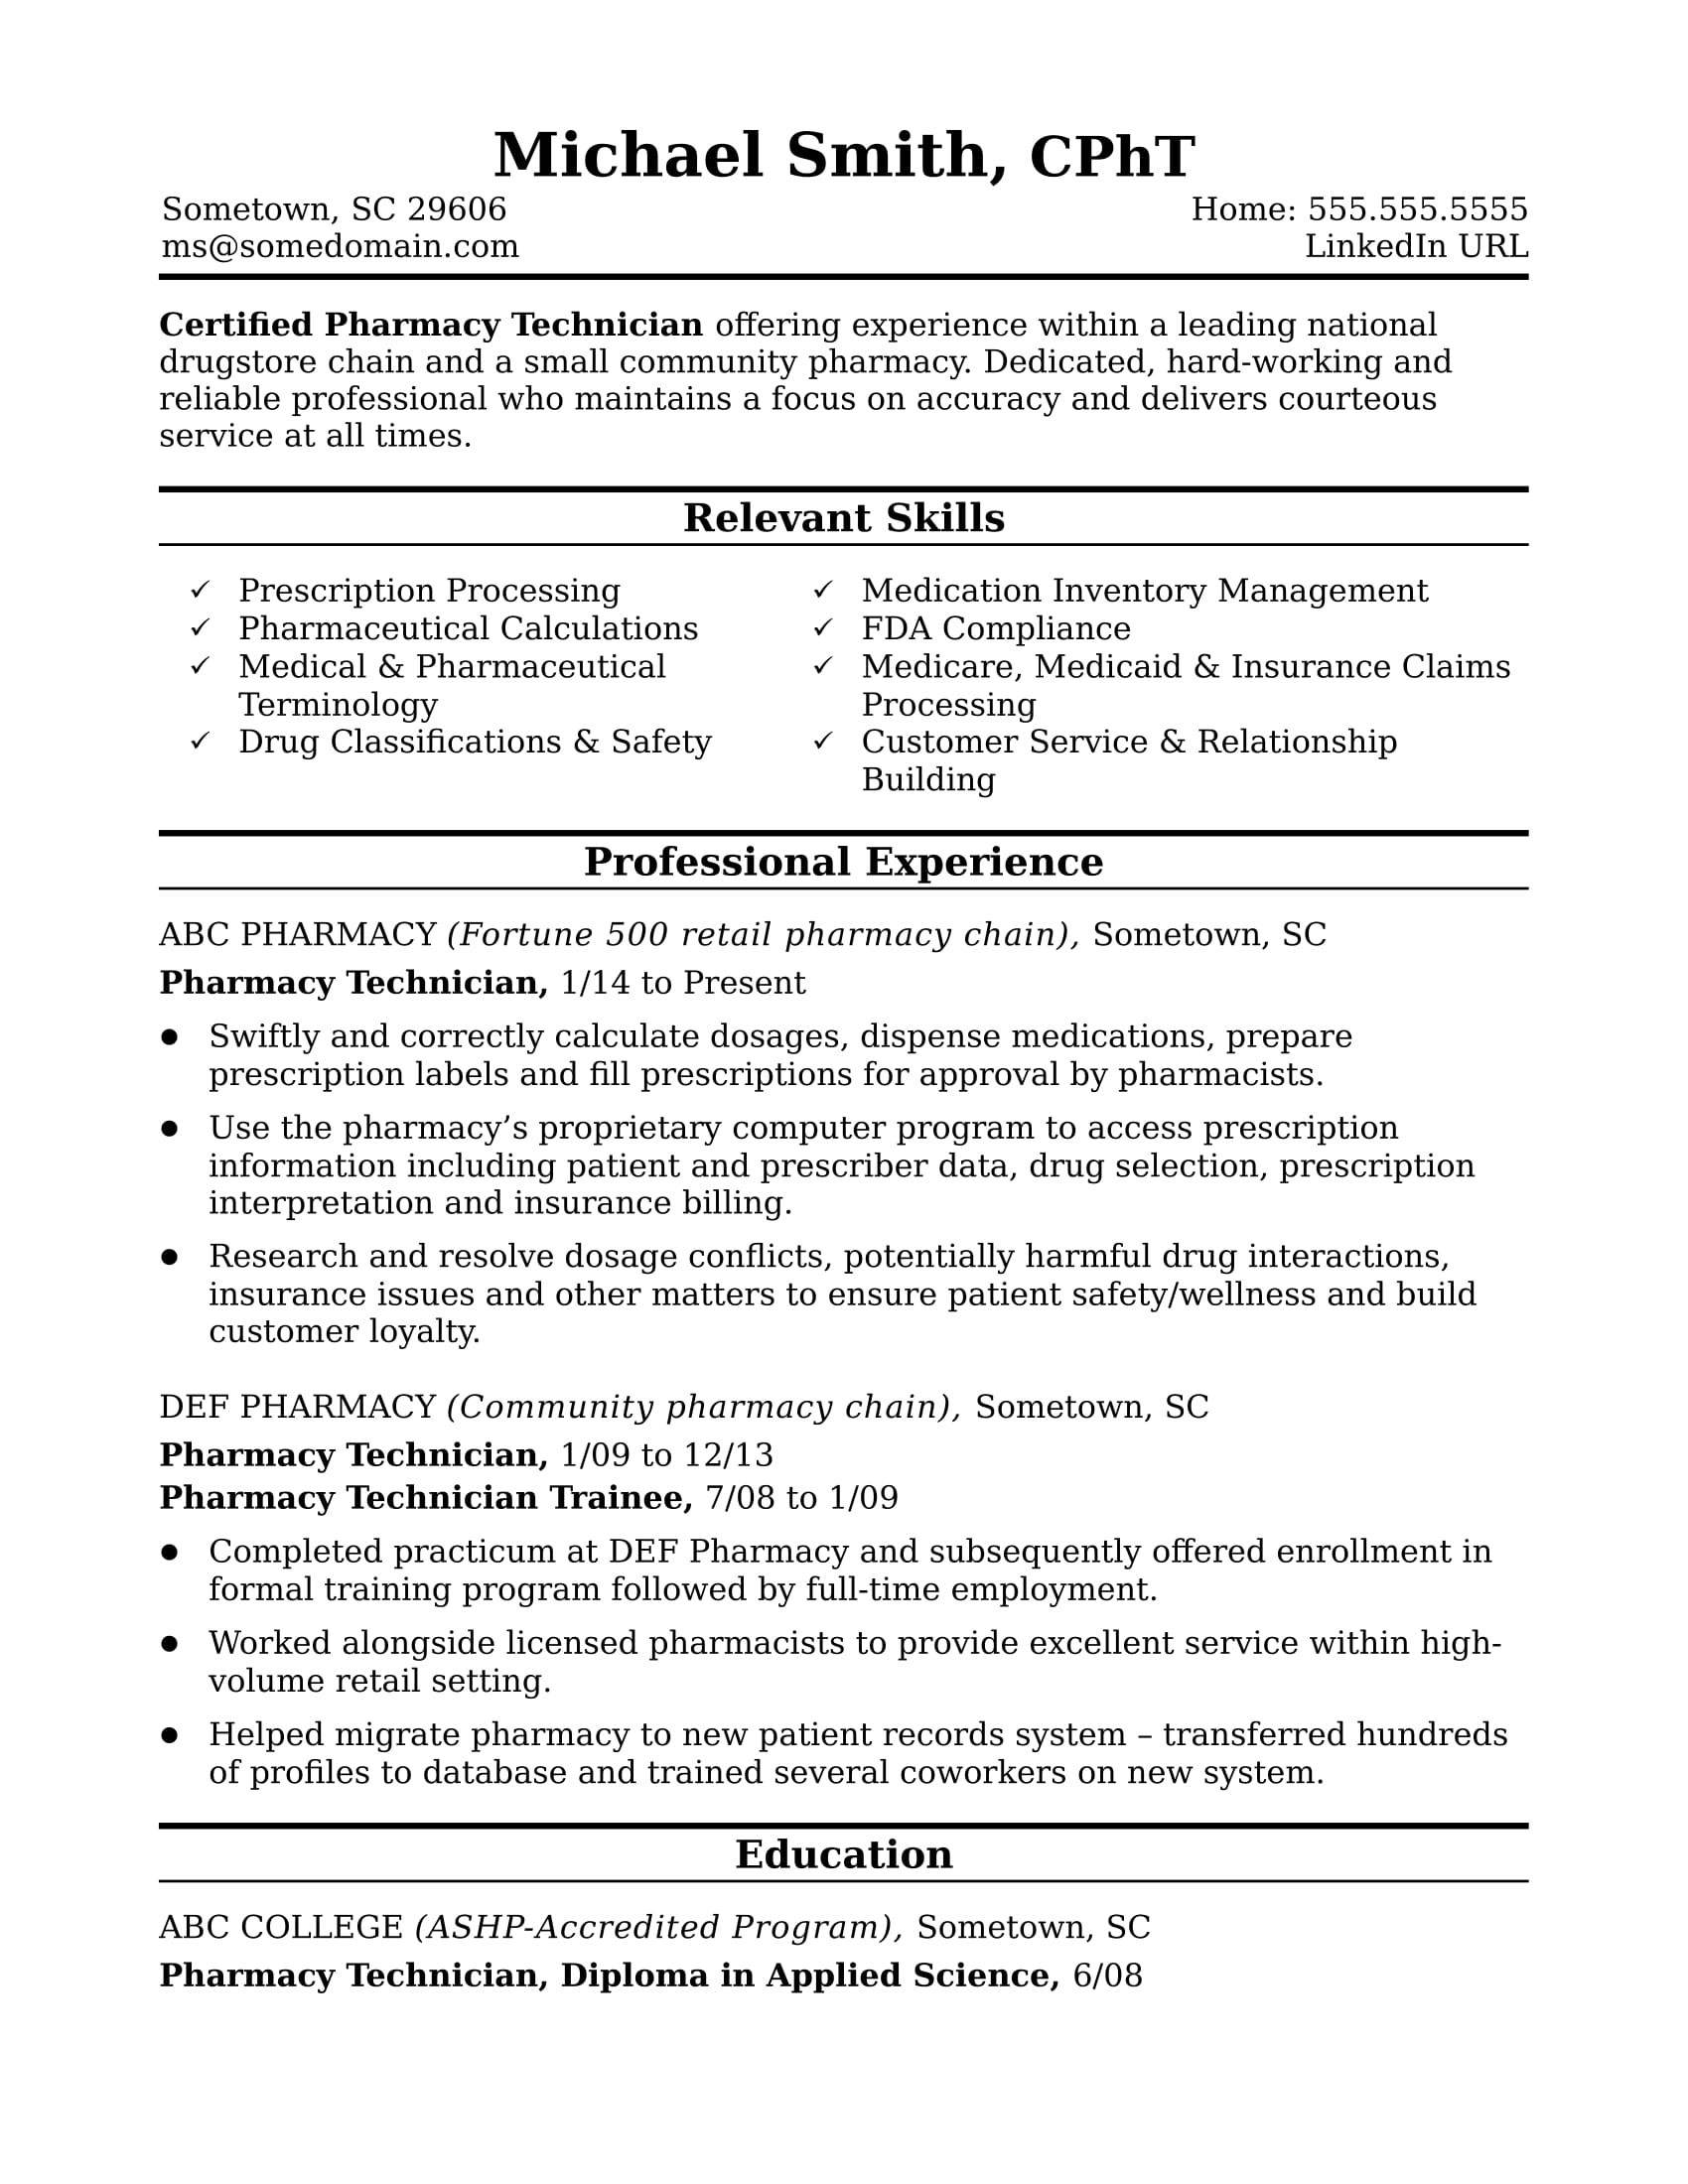 Sample Resume for Pharmacy Technician Position Midlevel Pharmacy Technician Resume Sample Monster.com